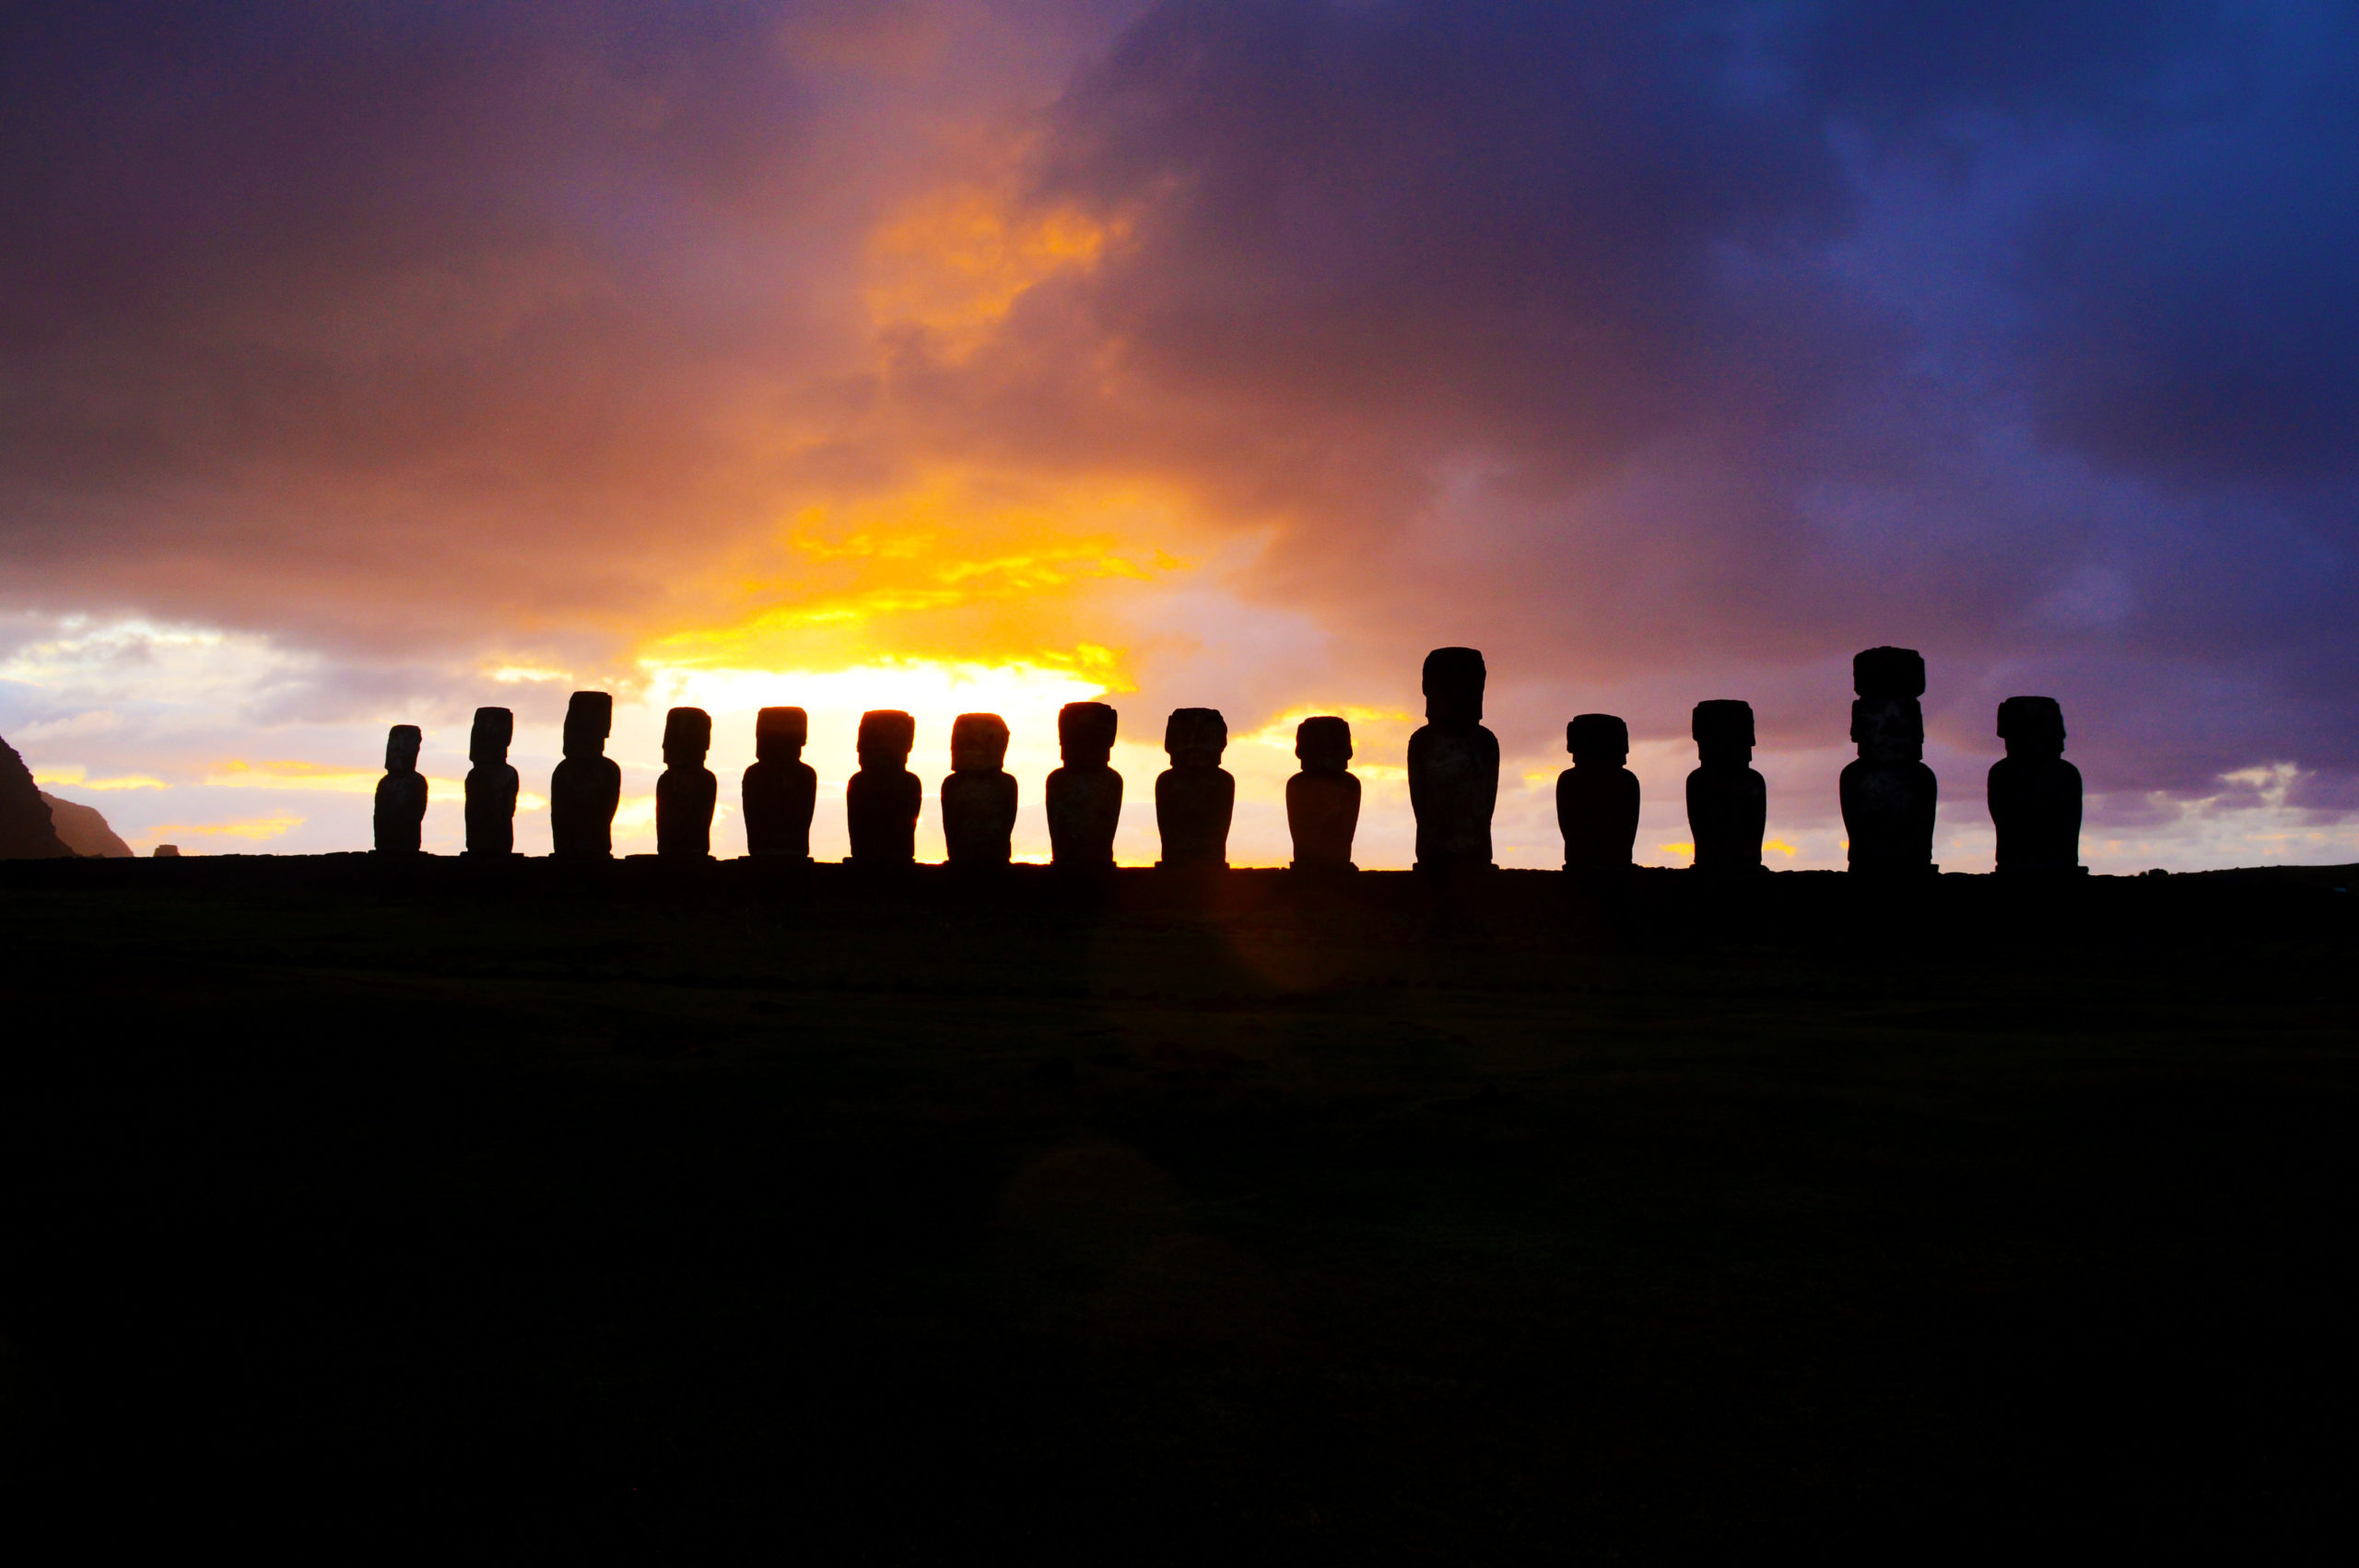 Toutes les statues de Tongariki en contre jour, paraissant toutes noires, devant le ciel rouge du soleil levant